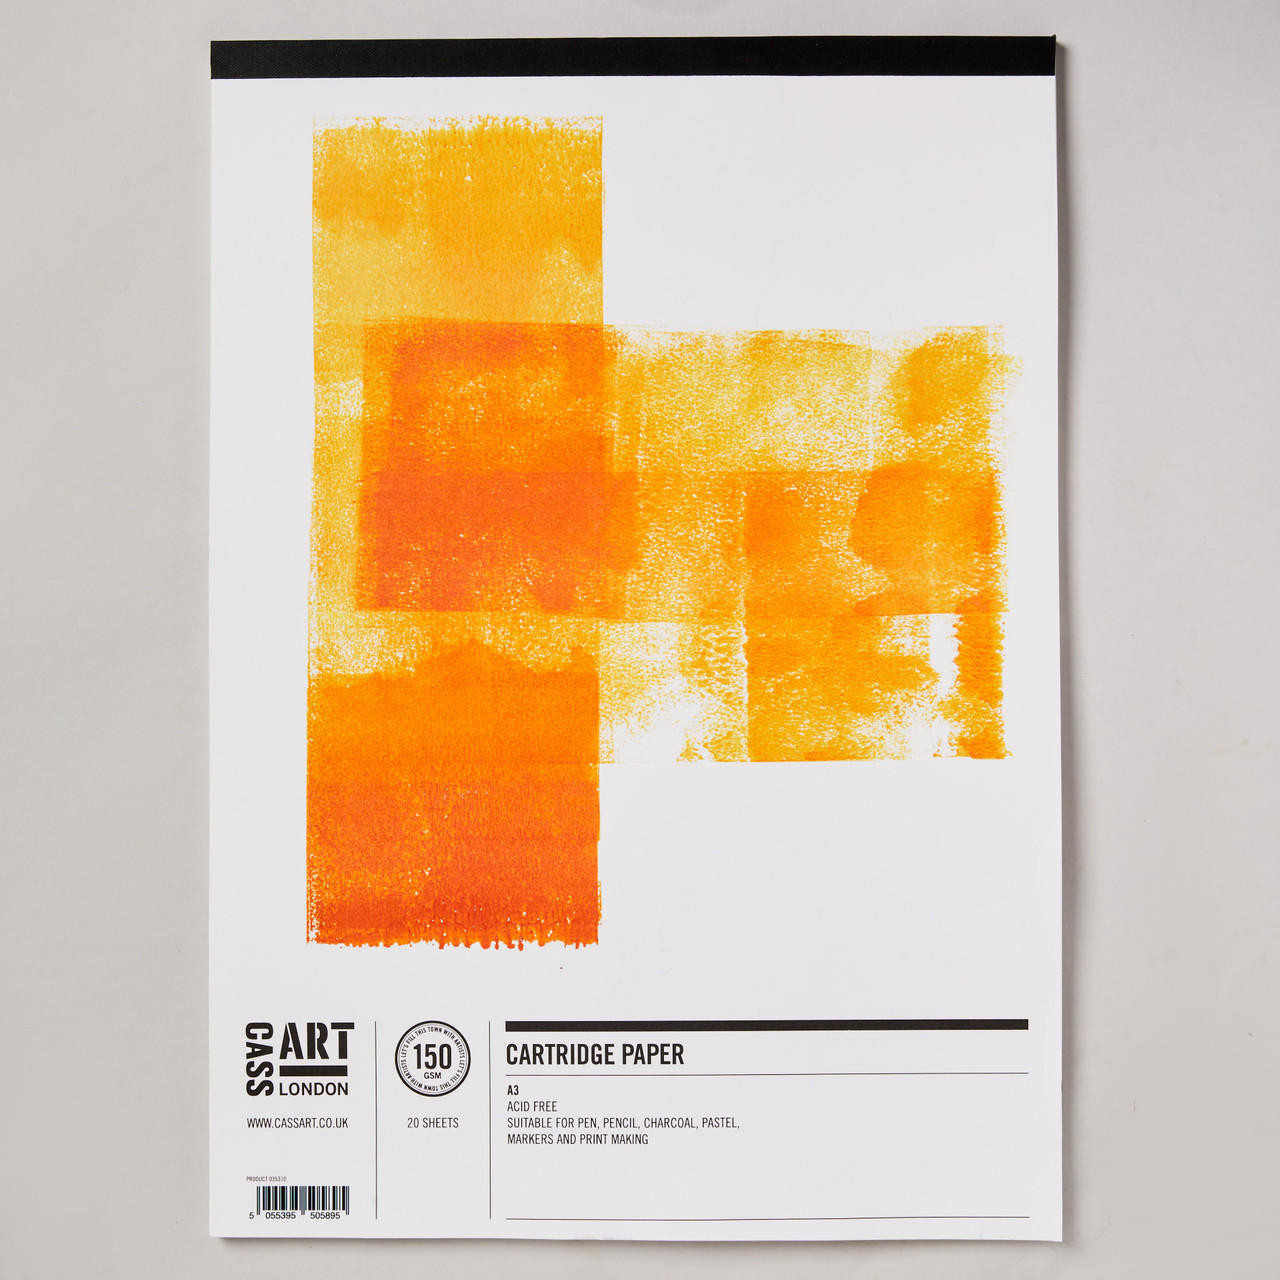 Cass Art Cartridge Paper Pad 20 Sheets 150gsm A3